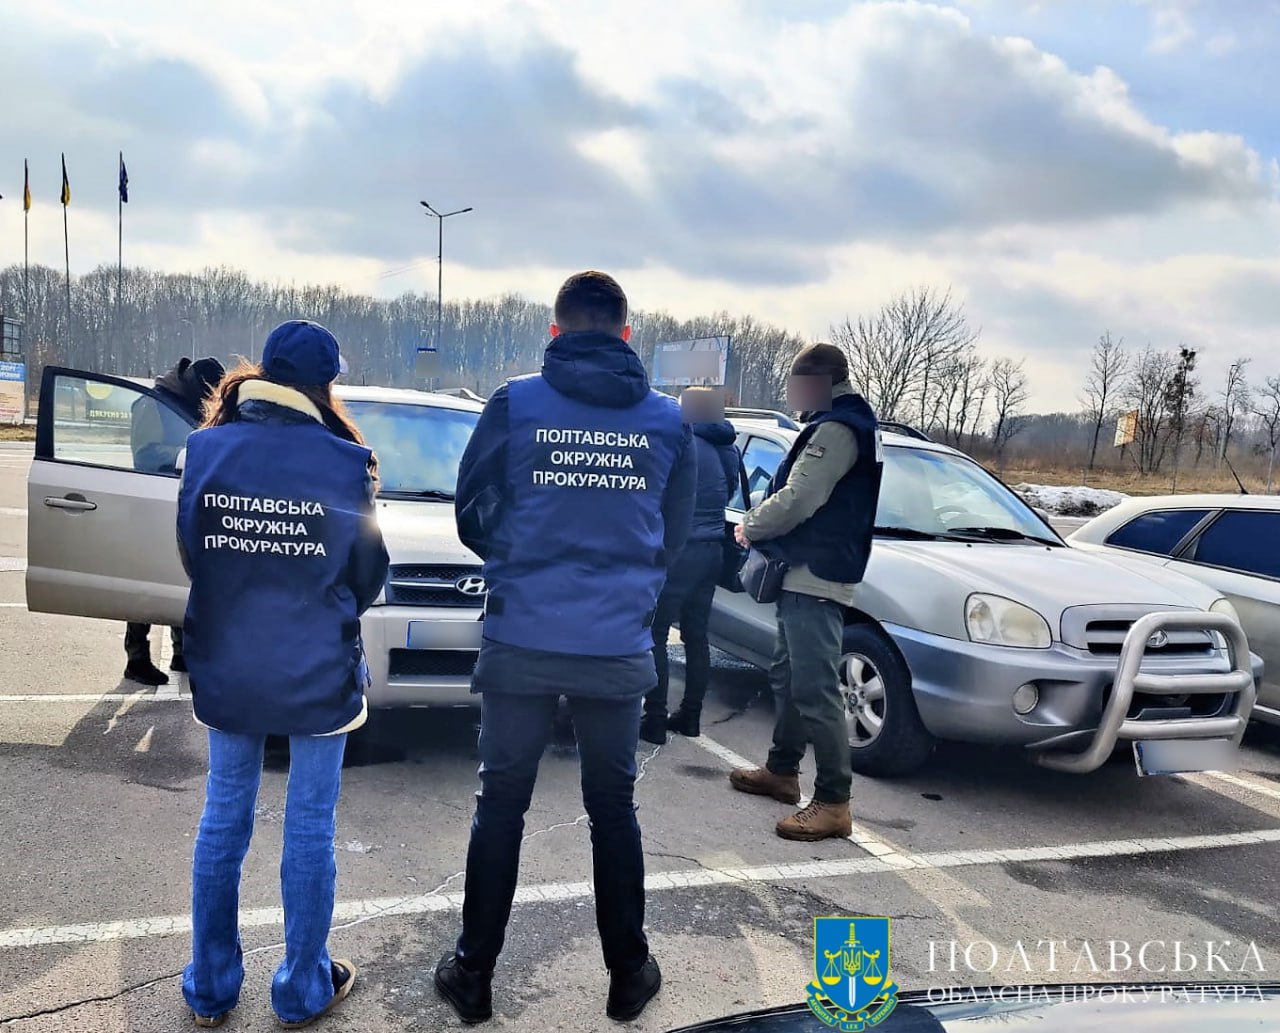 Полтавська окружна прокуратура забезпечила передачу 7 автомобілів для потреб ЗСУ